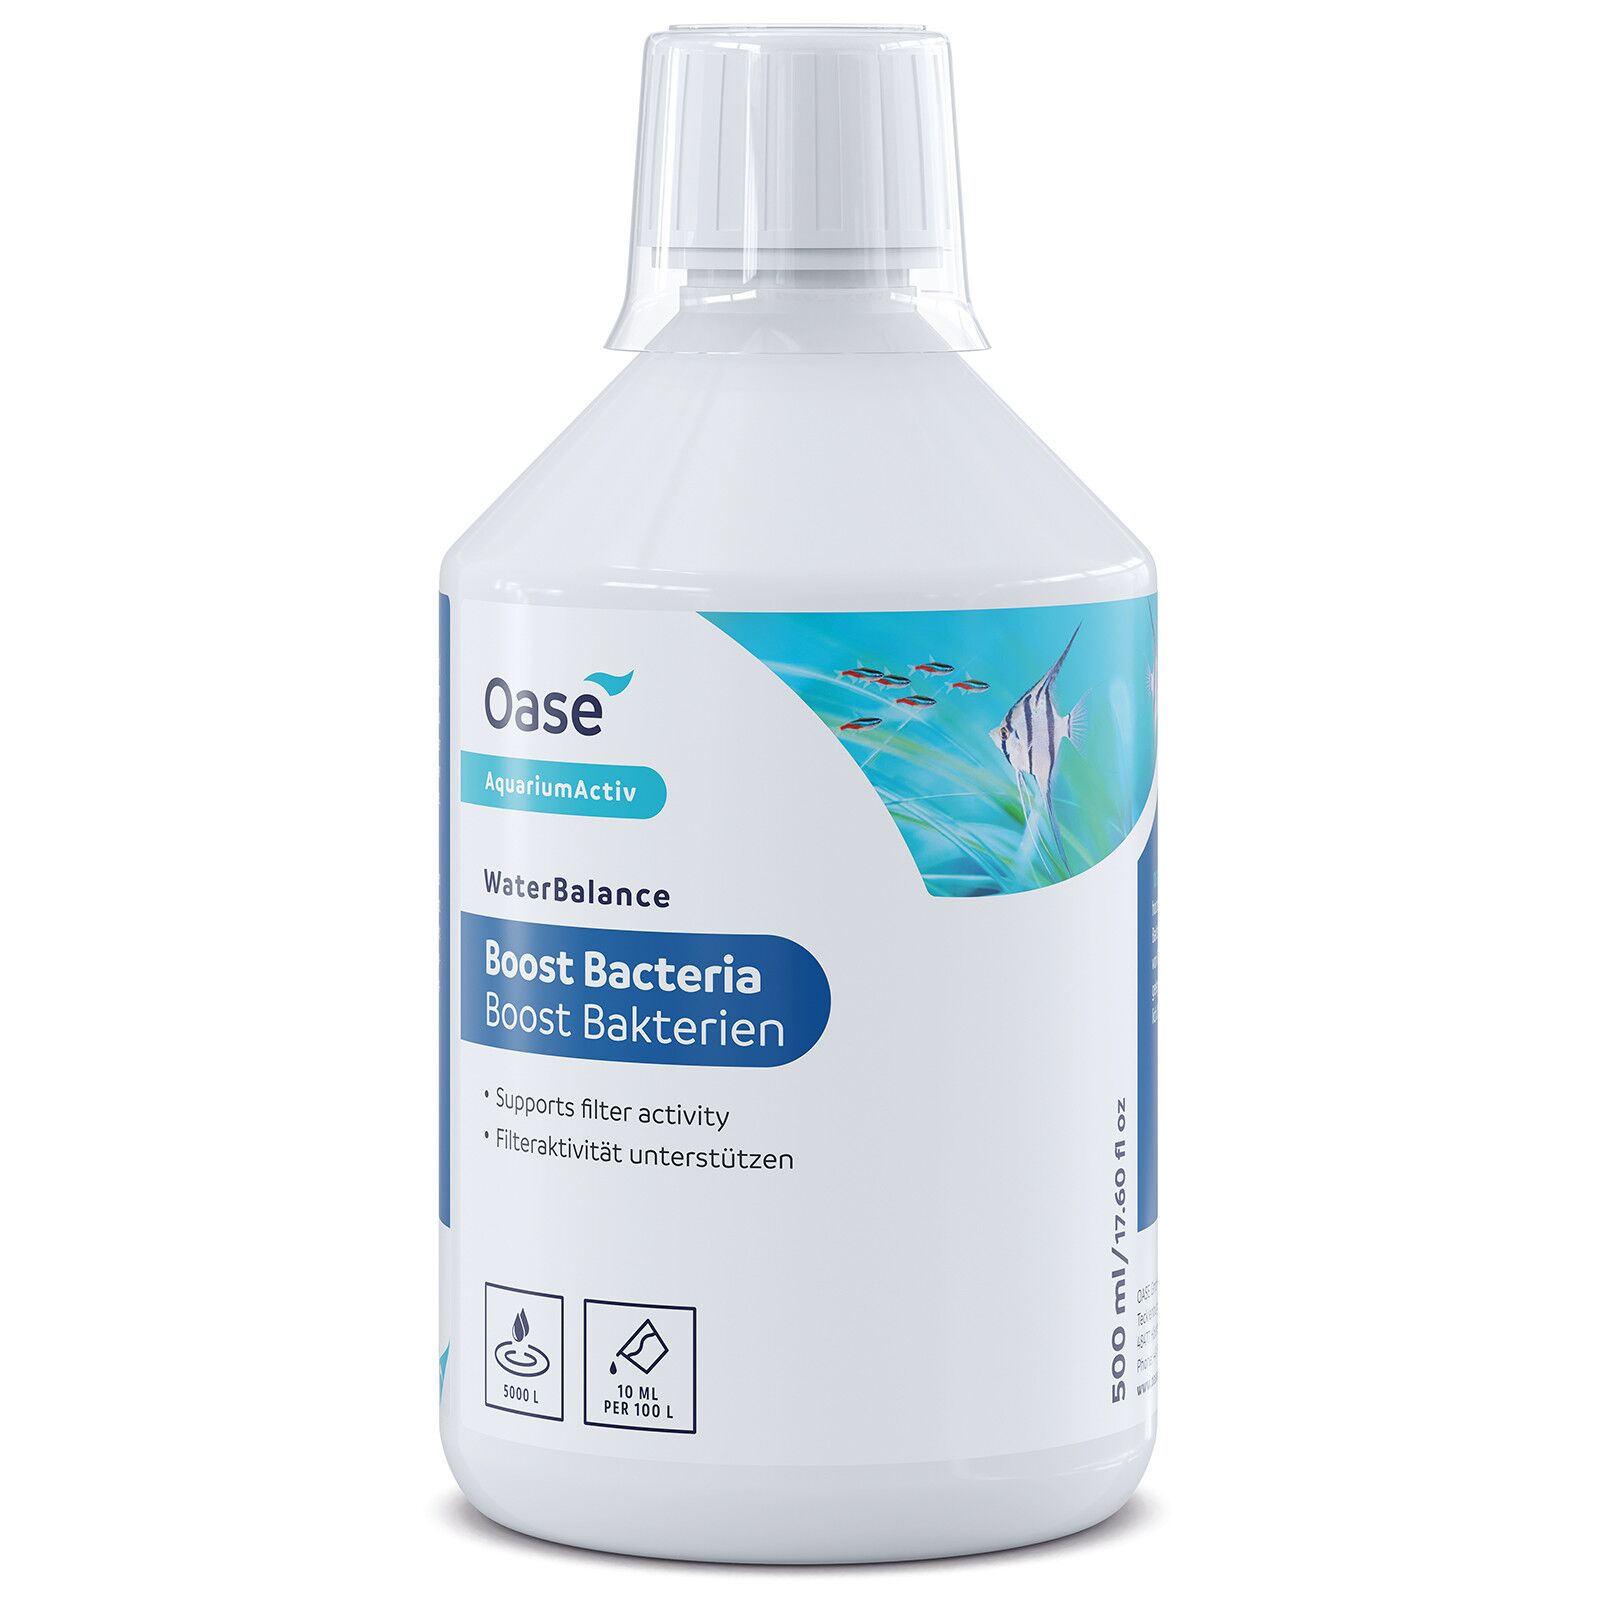 Oase - WaterBalance Boost Bakterien